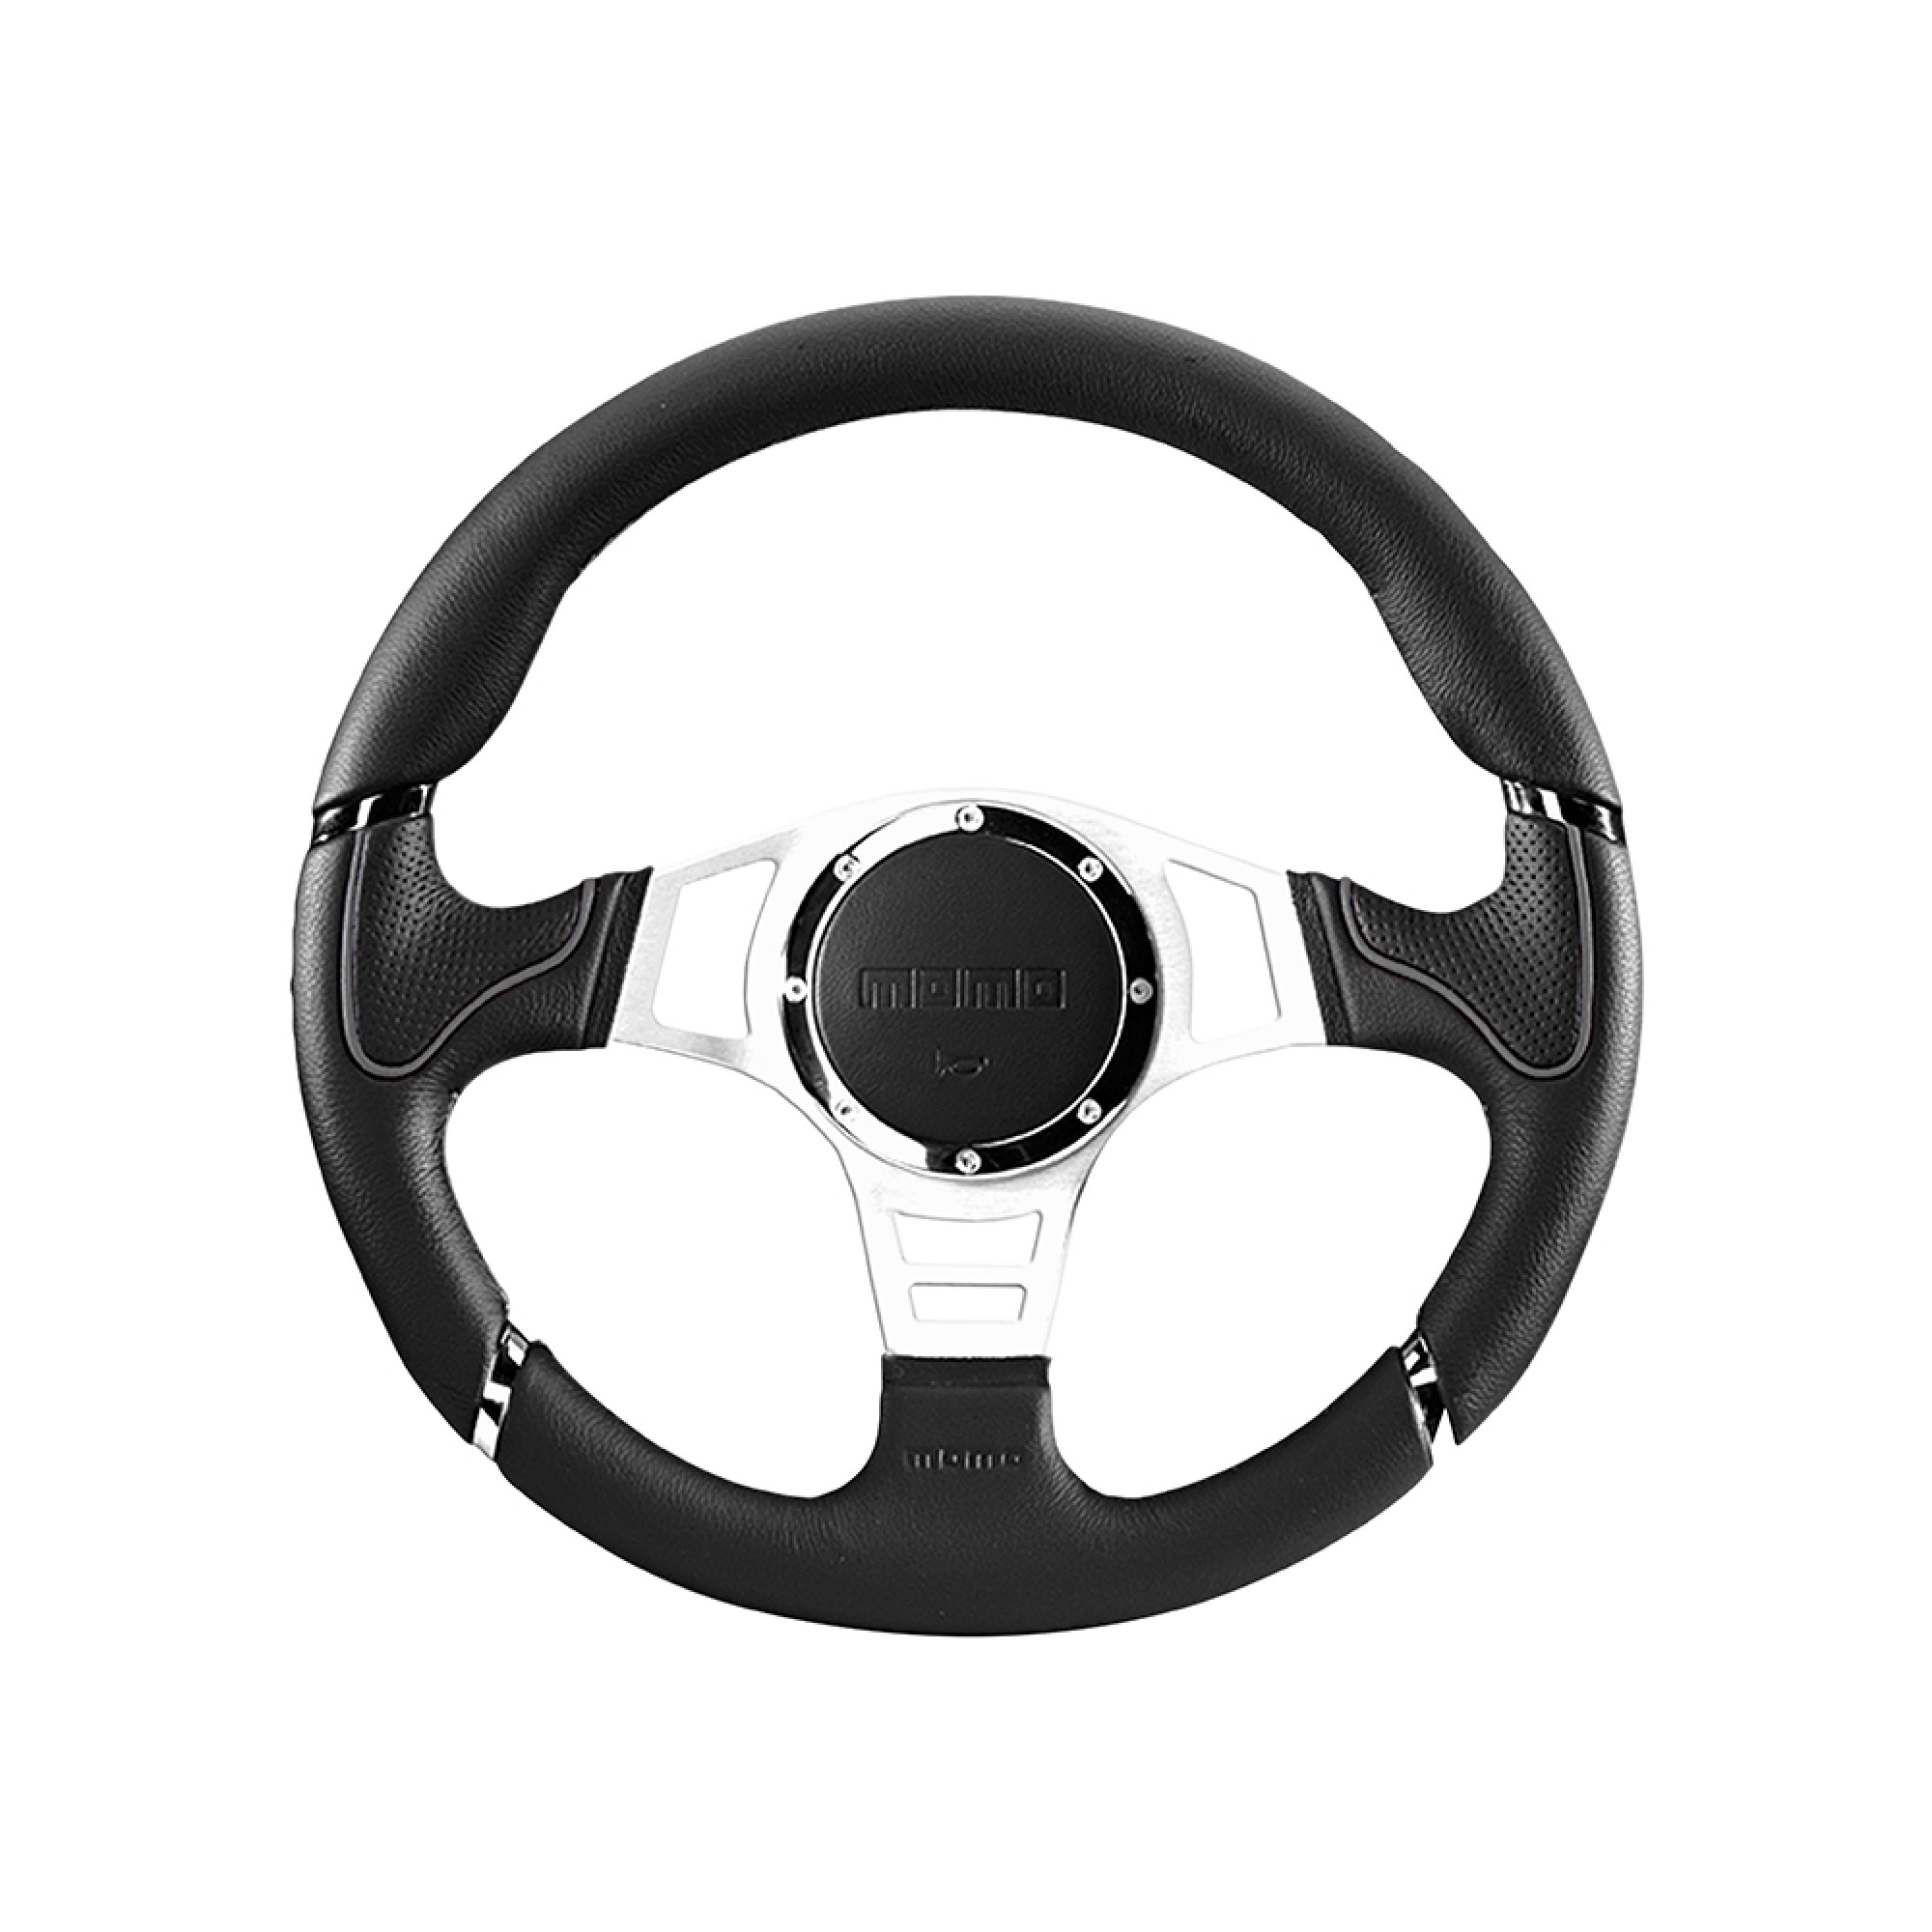 Momo Millenium Sport Steering Wheel Black/Grey 350mm